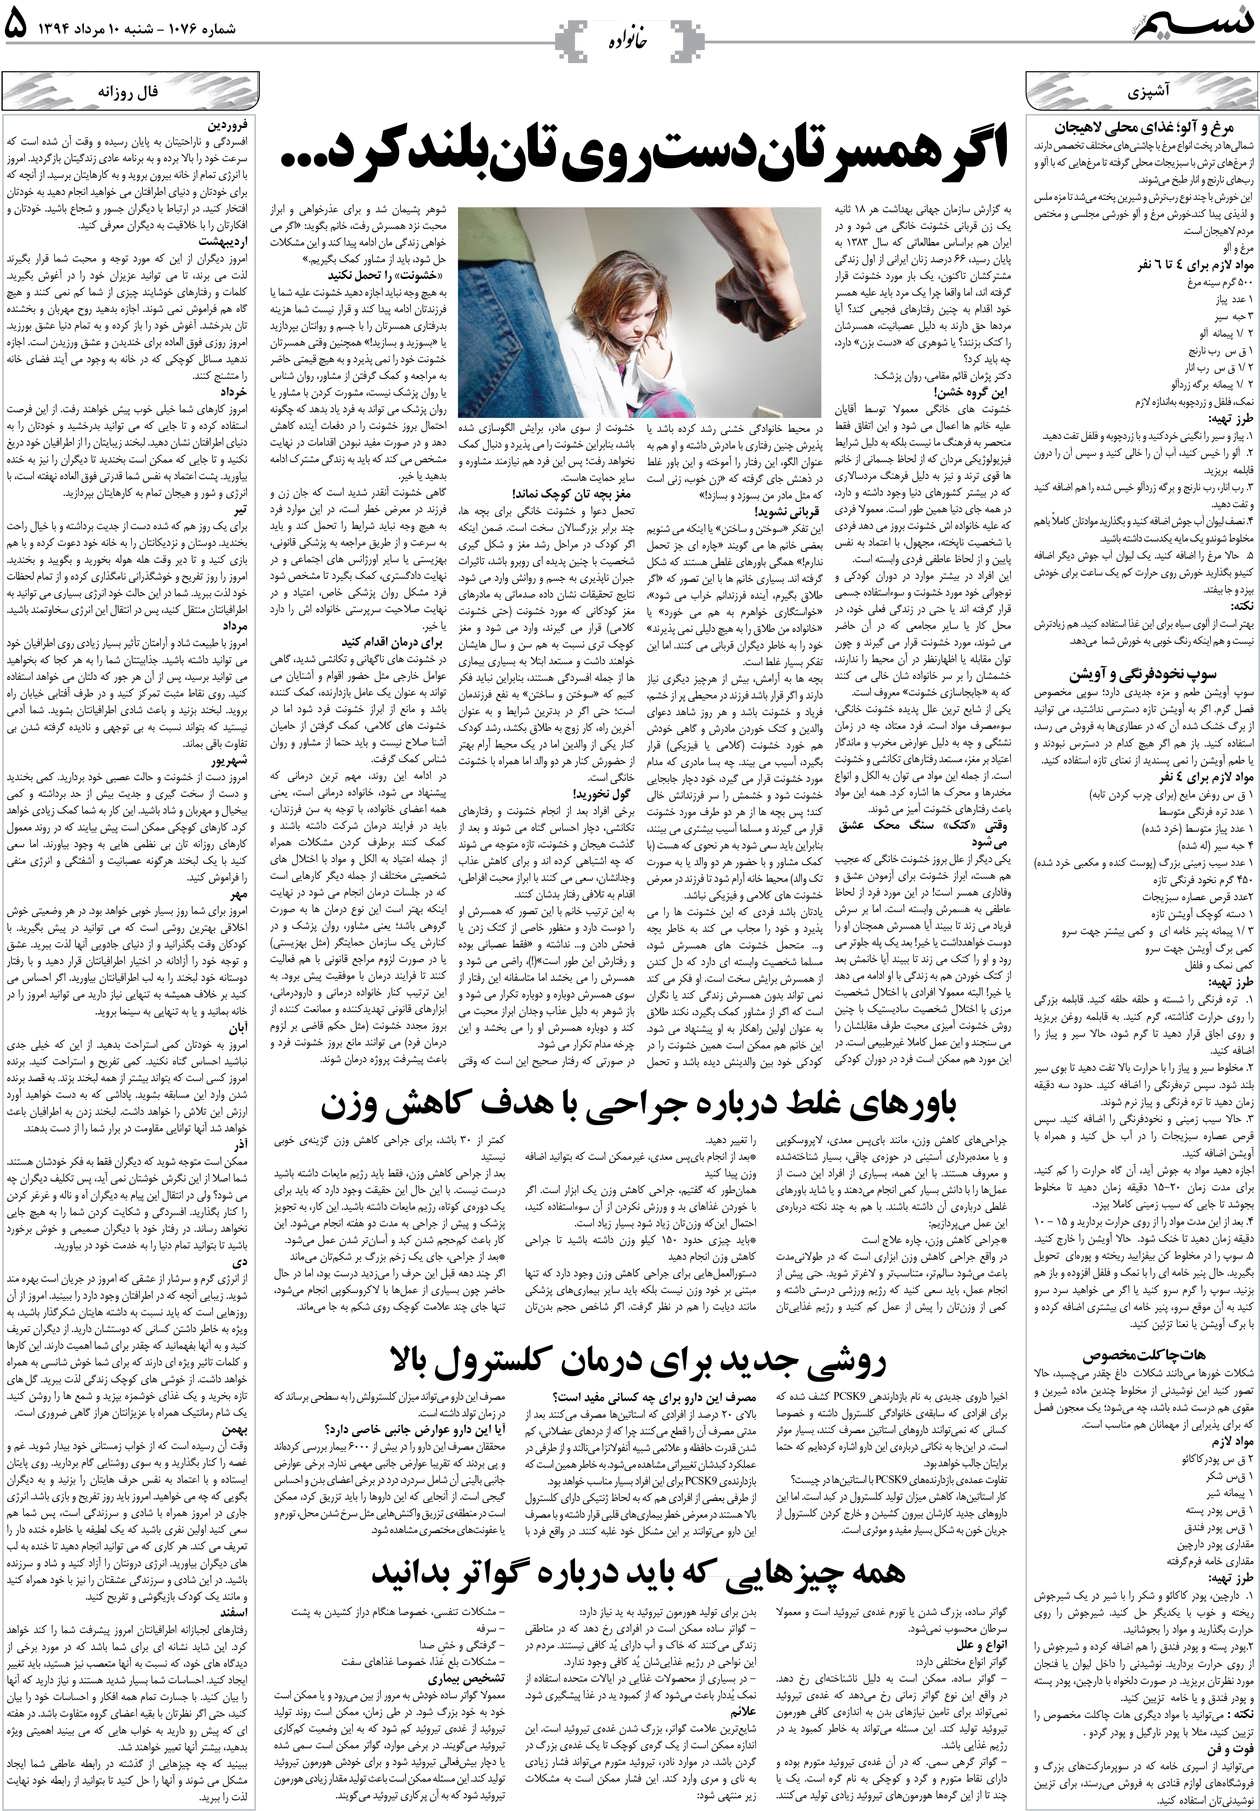 صفحه خانواده روزنامه نسیم شماره 1076